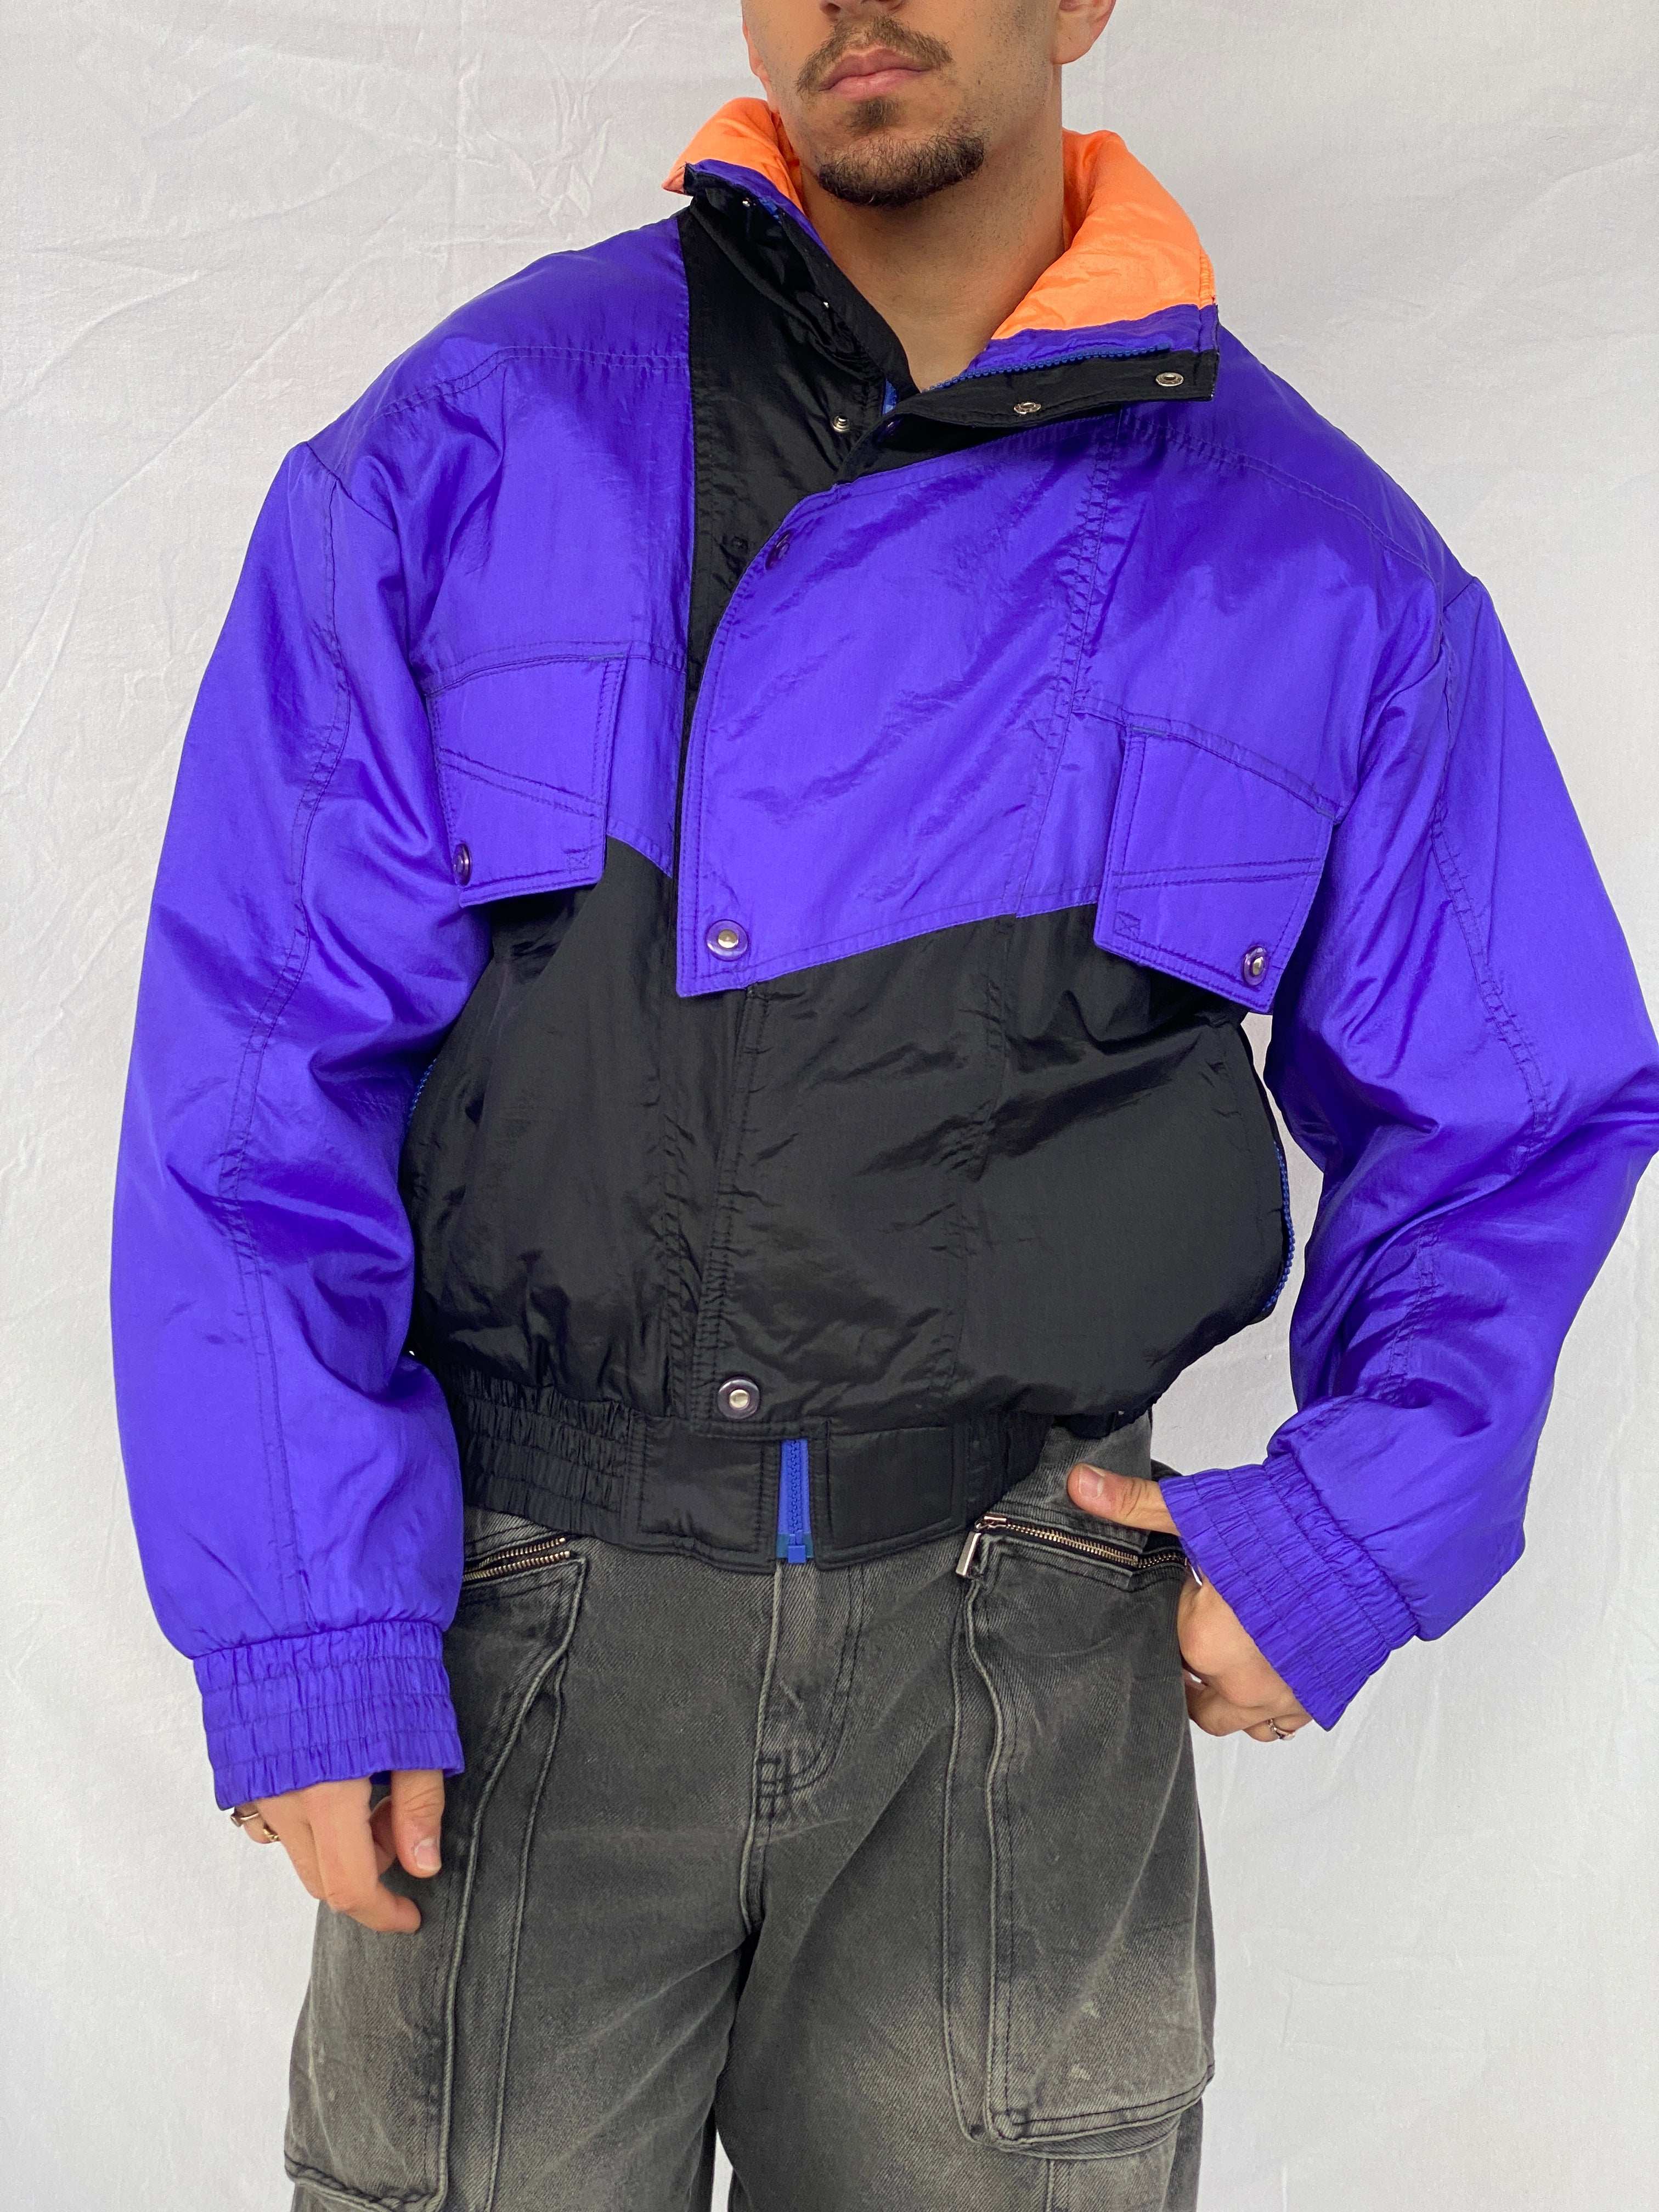 Vintage White Stag Purple Puffer Ski Jacket - Size M - Balagan Vintage Ski Jacket 80s, 90s, Abdullah, ski jacket, winter